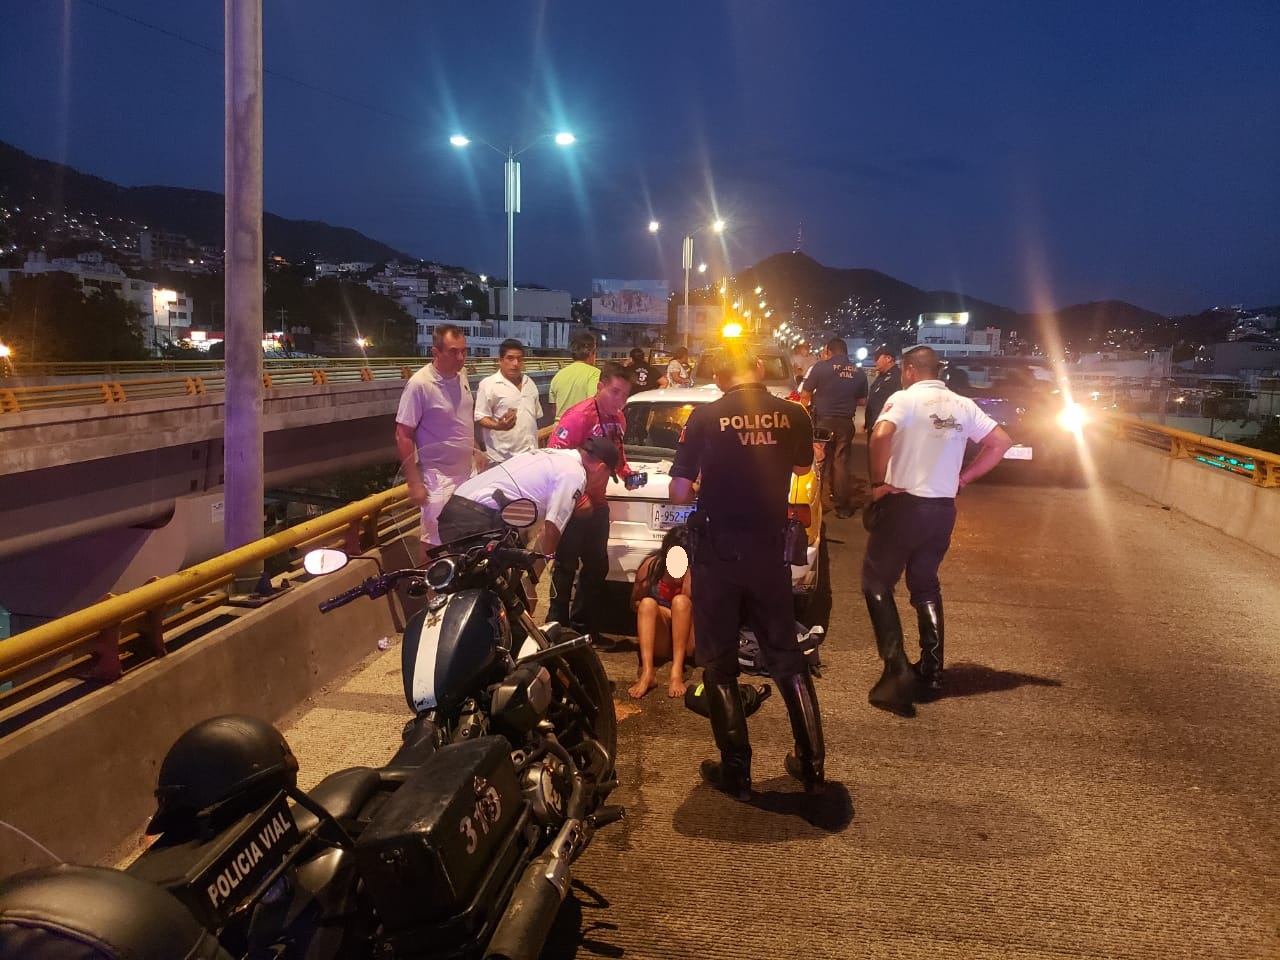 Jovencita buscaba suicidarse; intentó lanzarse del Puente Bicentenario en Acapulco